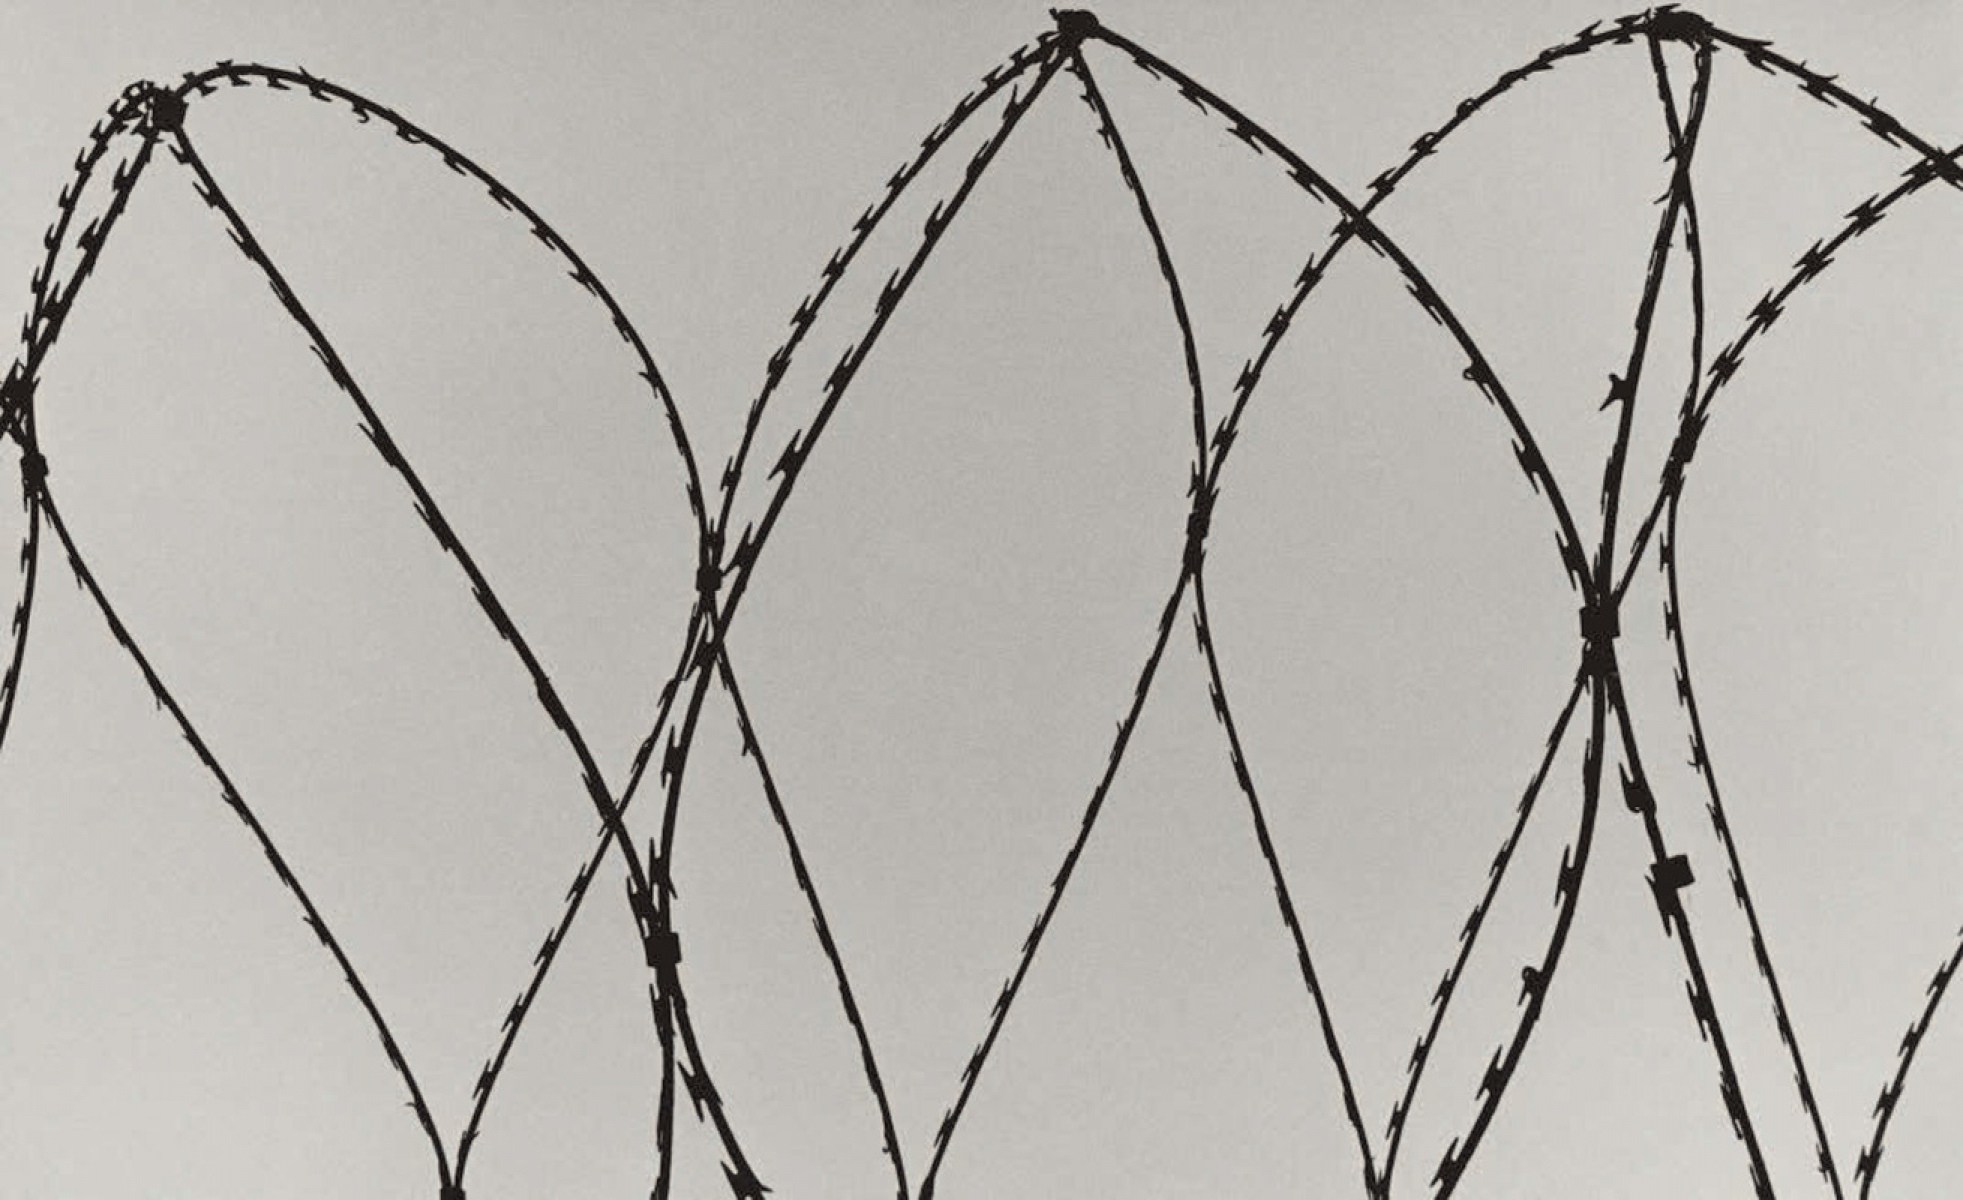 Koto Bolofo | The Prison | 10